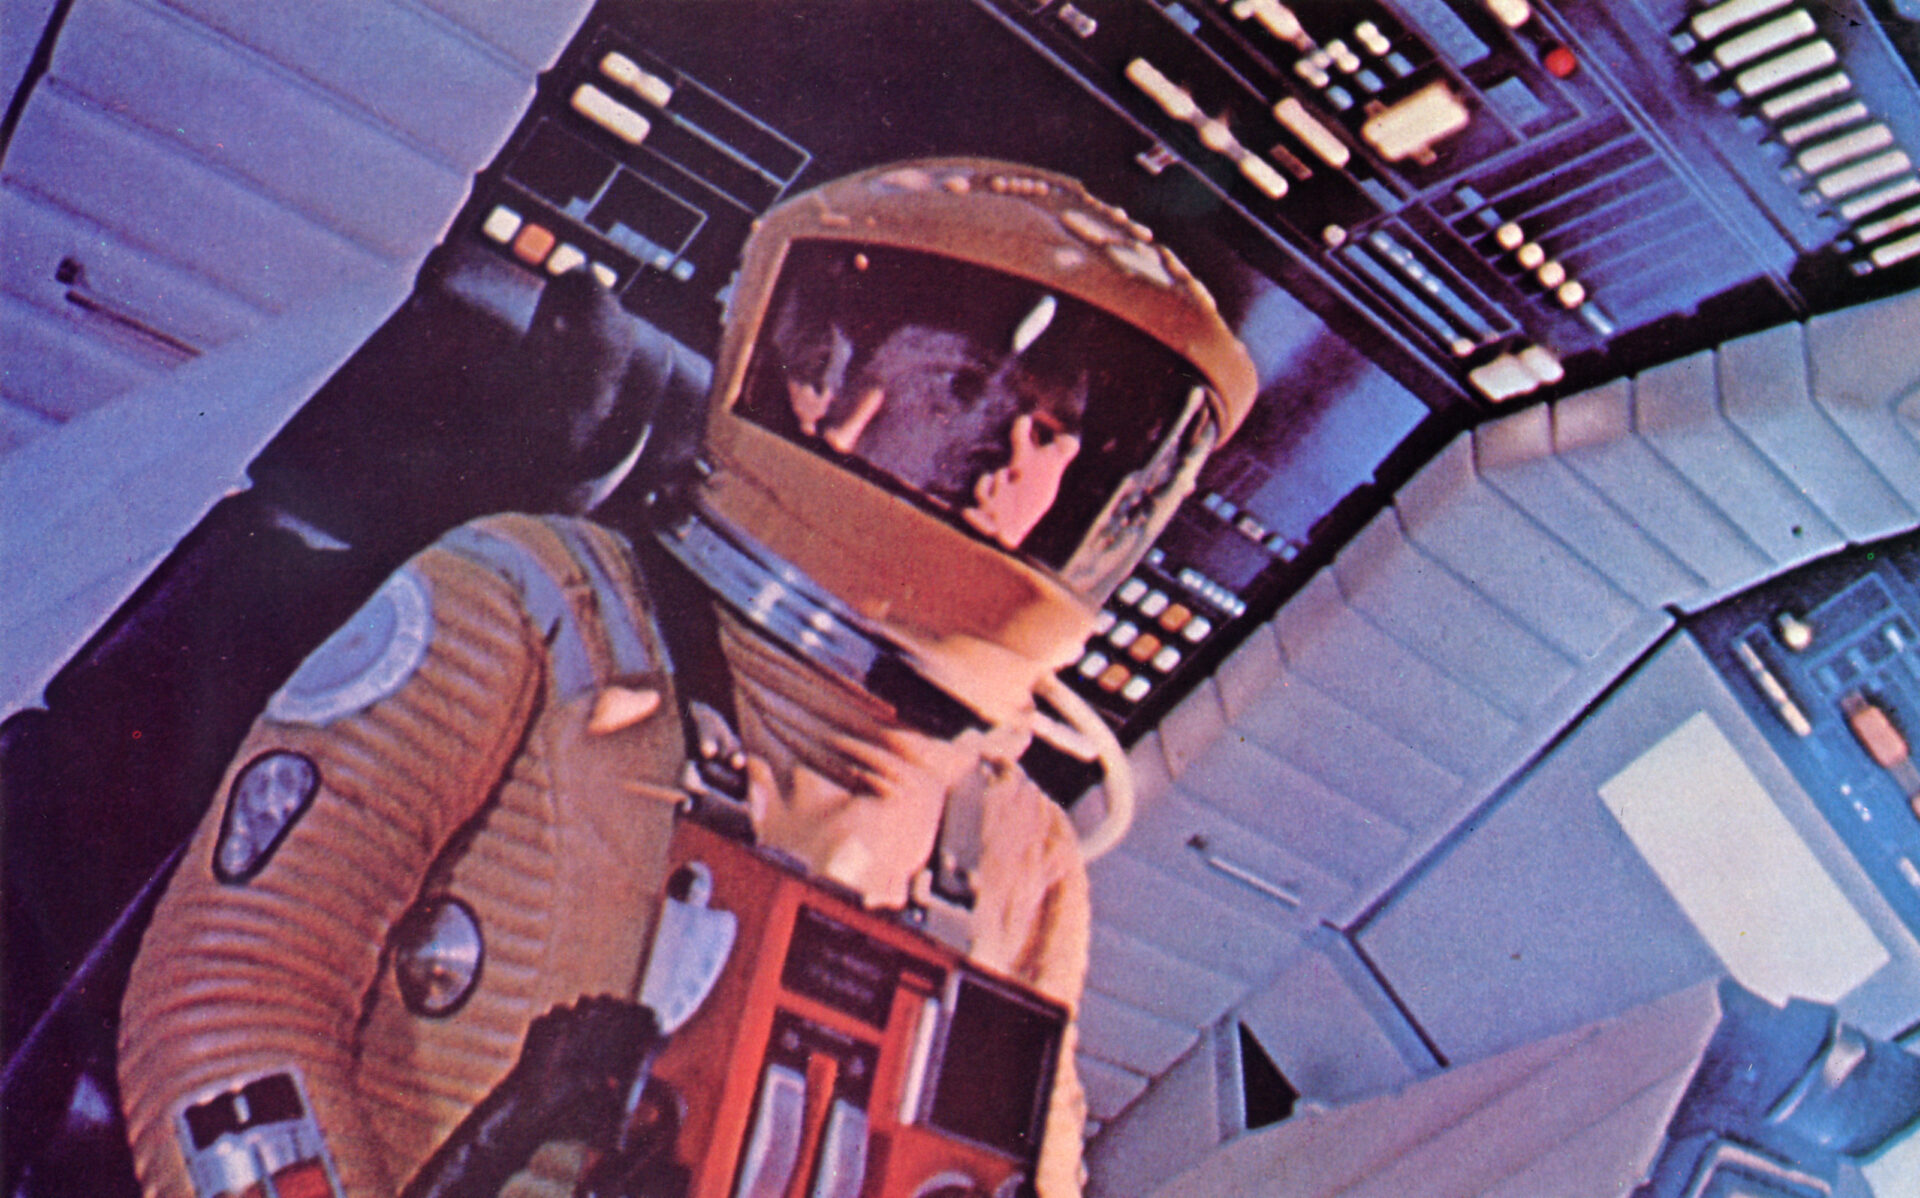 2001 a space odyssey 4 Kubrick